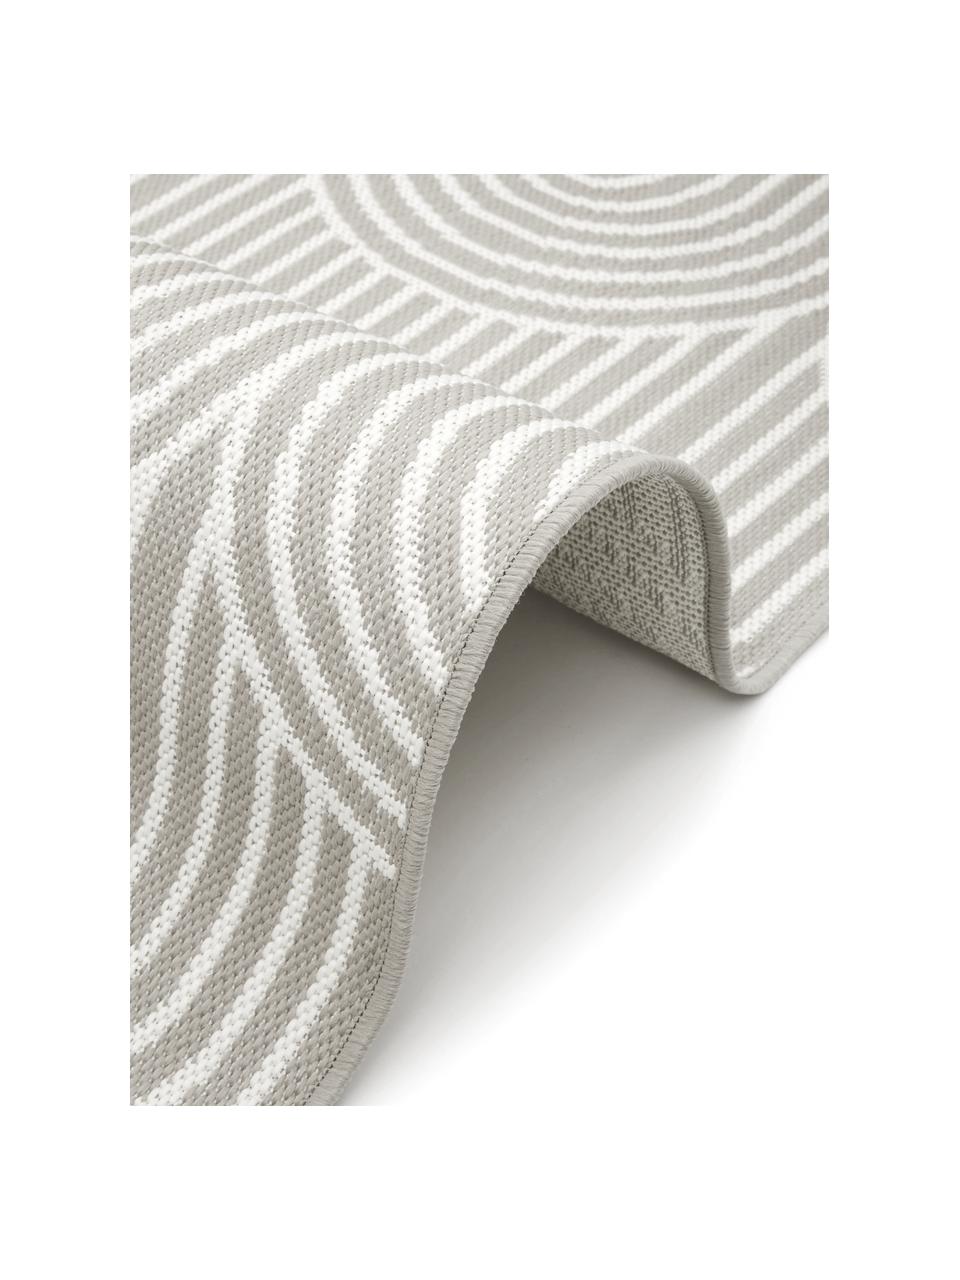 In- & Outdoorteppich Arches in Grau/Weiß, 86% Polypropylen, 14% Polyester, Grau, Weiß, B 200 x L 290 cm (Größe L)